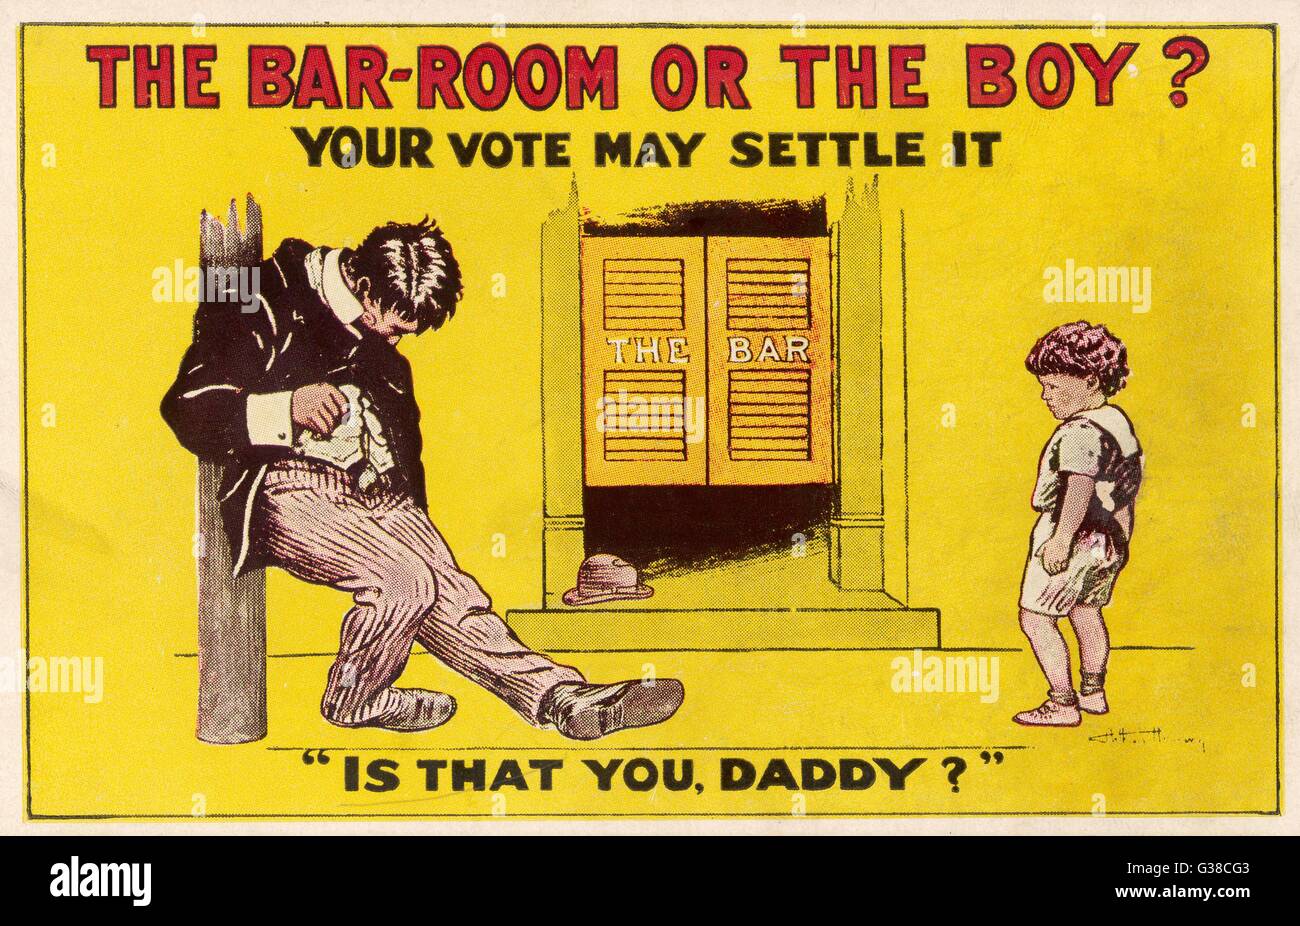 "DAS IST SIE, DADDY?" Propaganda für ein Verbot setzt voraus, dass jeder Mann, der eine Bar bevormundet wird ein betrunkener Sot...      Datum: ca. 1918 Stockfoto